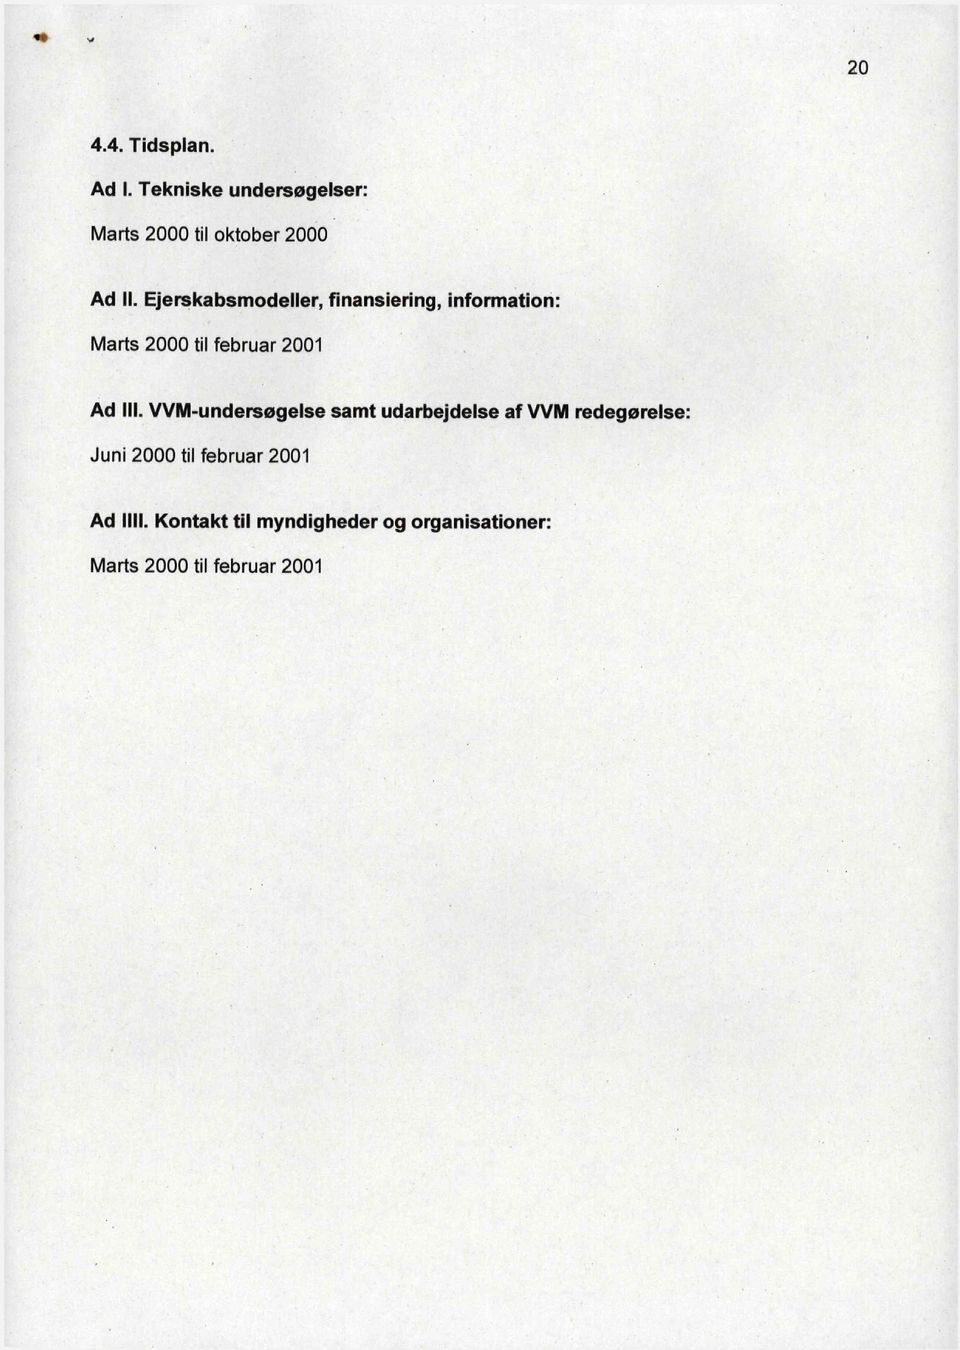 Ejerskabsmodeller, finansiering, information: Marts 2000 til februar 2001 Ad III.